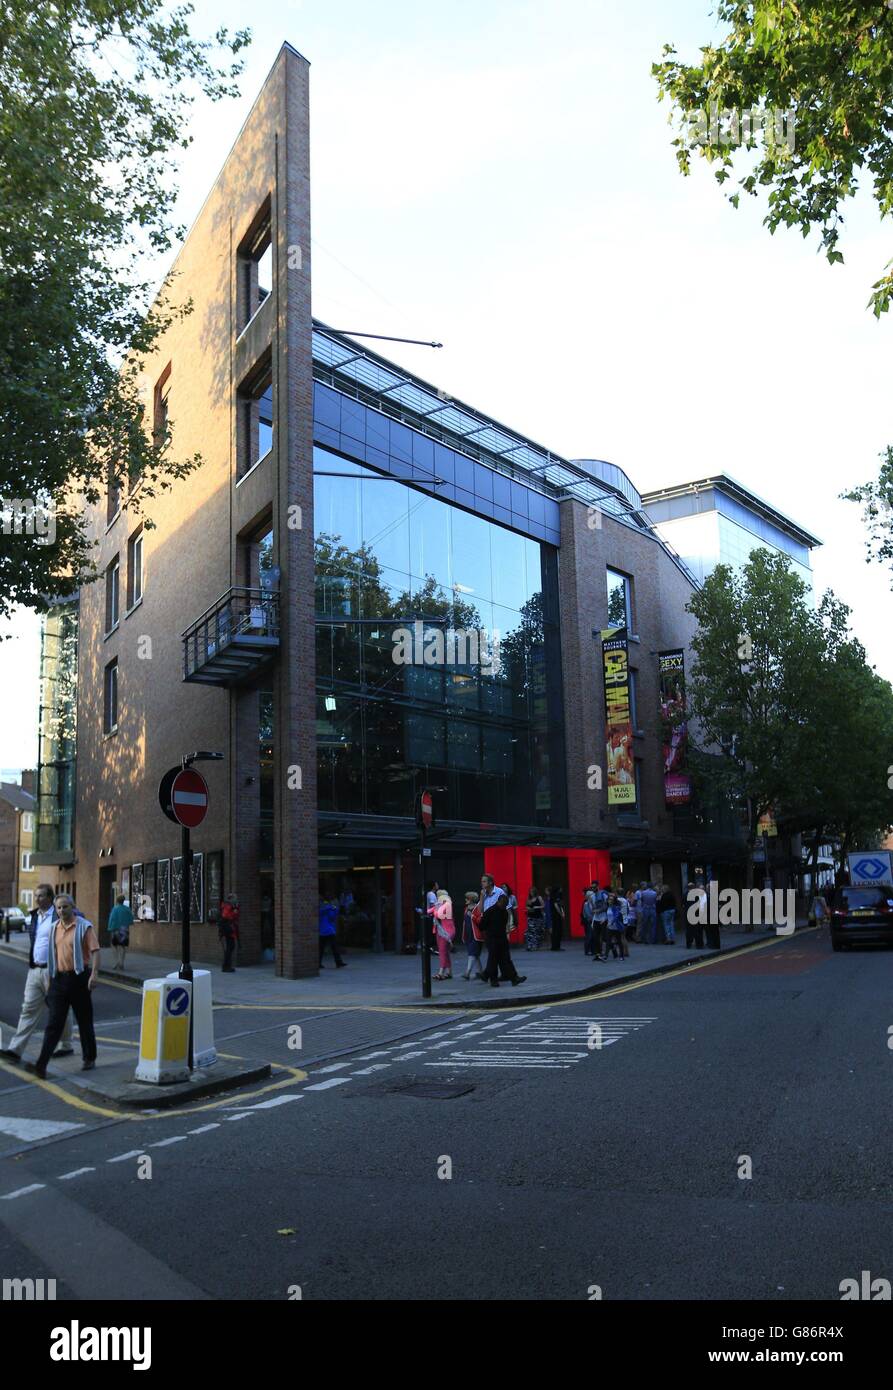 Una visione generale del Sadler's Wells Theatre, Londra, a seguito della cancellazione della performance di questa sera di Matthew Bourne's The Car Man, a seguito della morte del ballerino professionista Jonathan Ollivier. Foto Stock